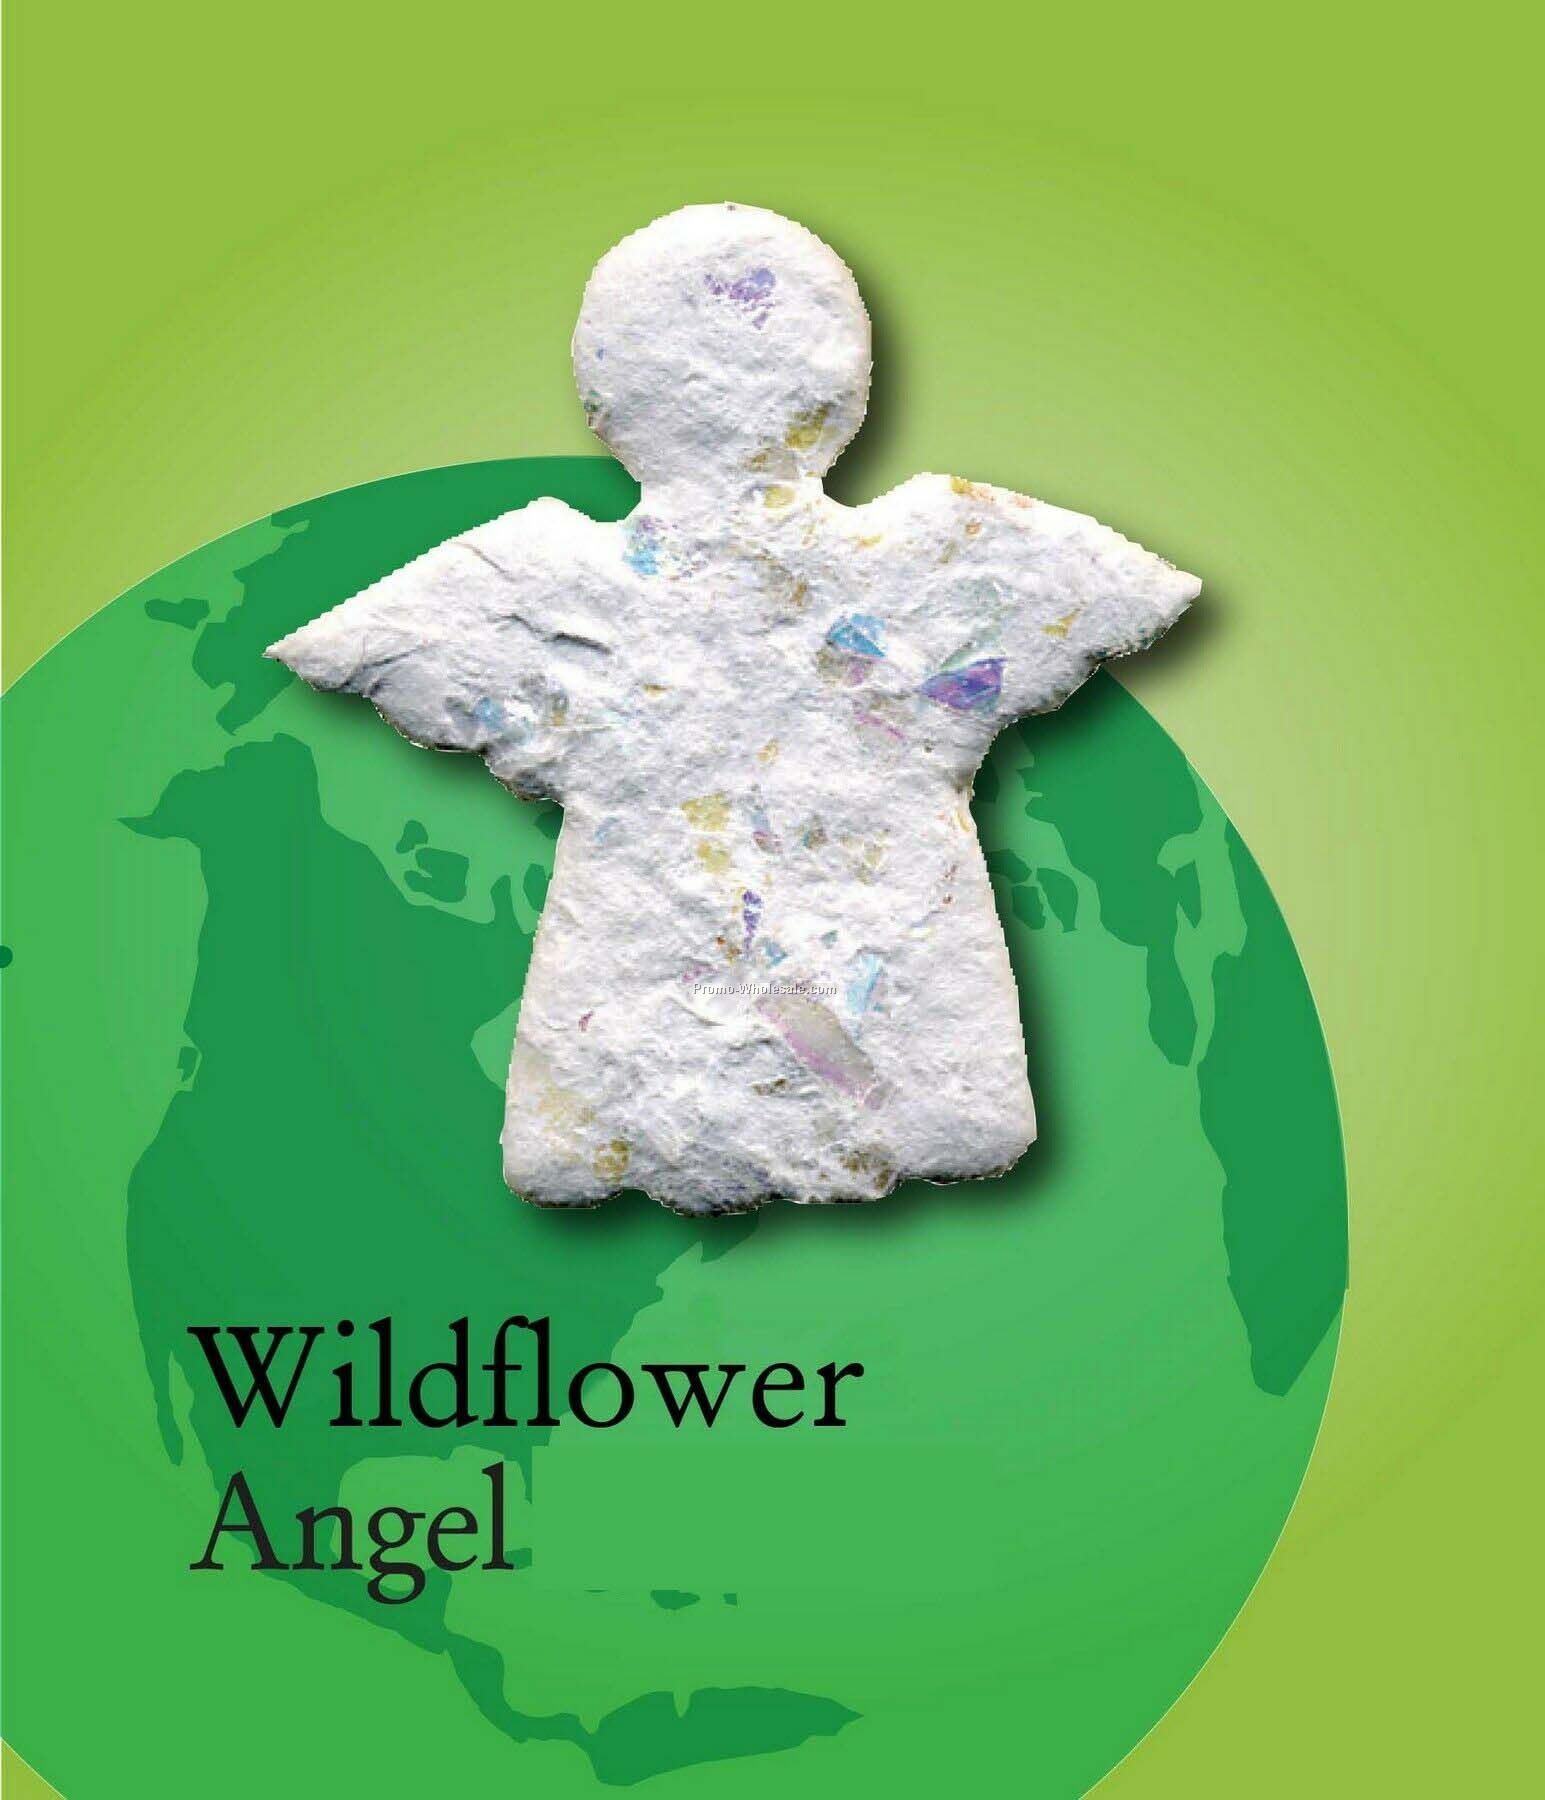 Wildflower Angel Handmade Seed Plantable Mini